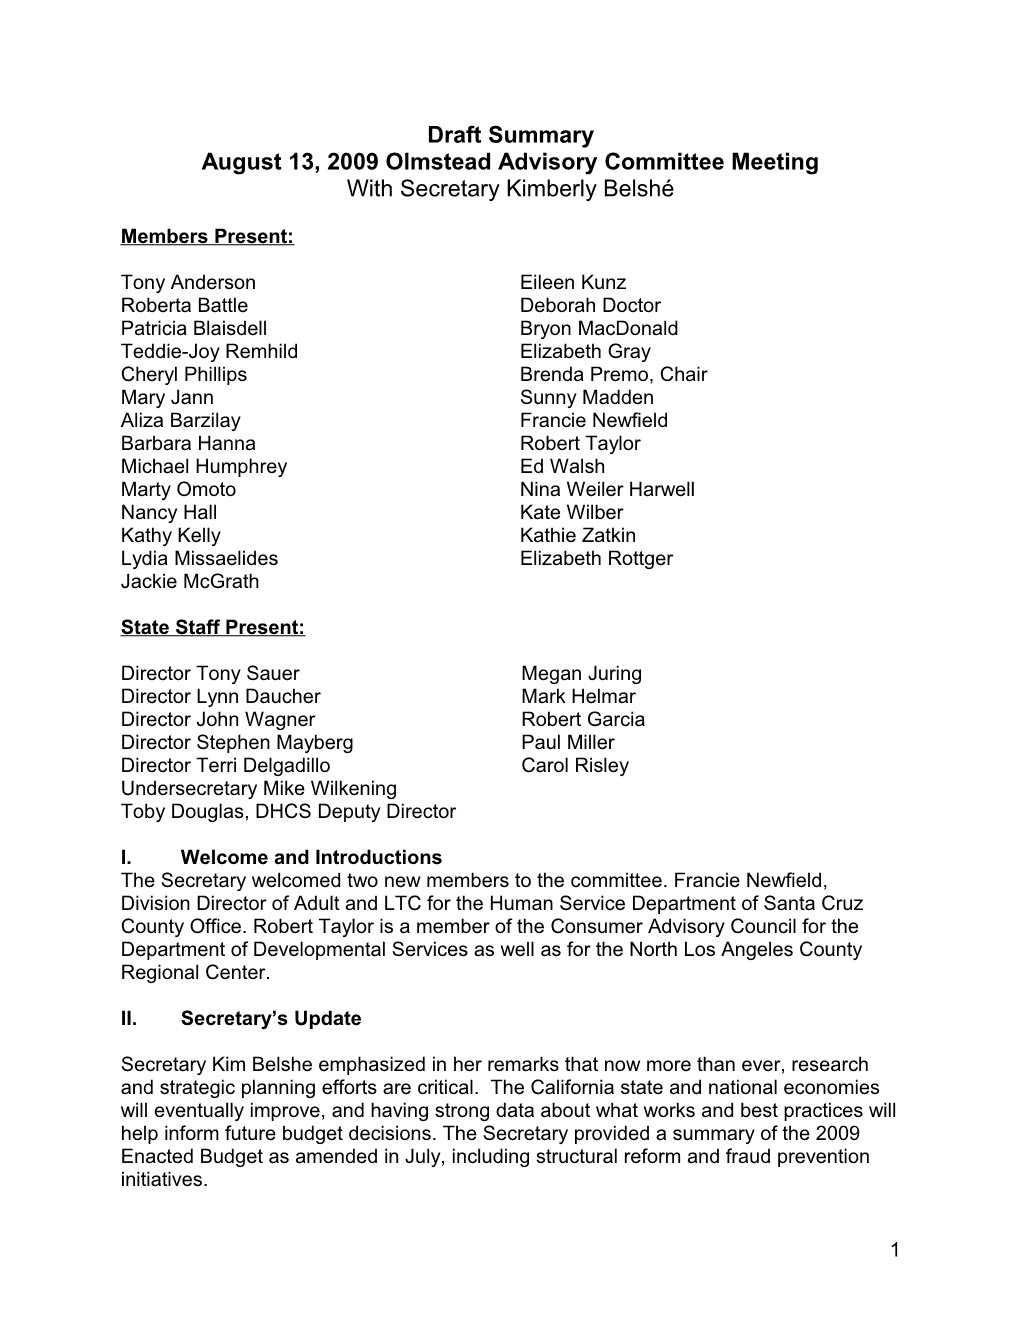 August 13, 2009 Olmstead Advisory Committee Meeting